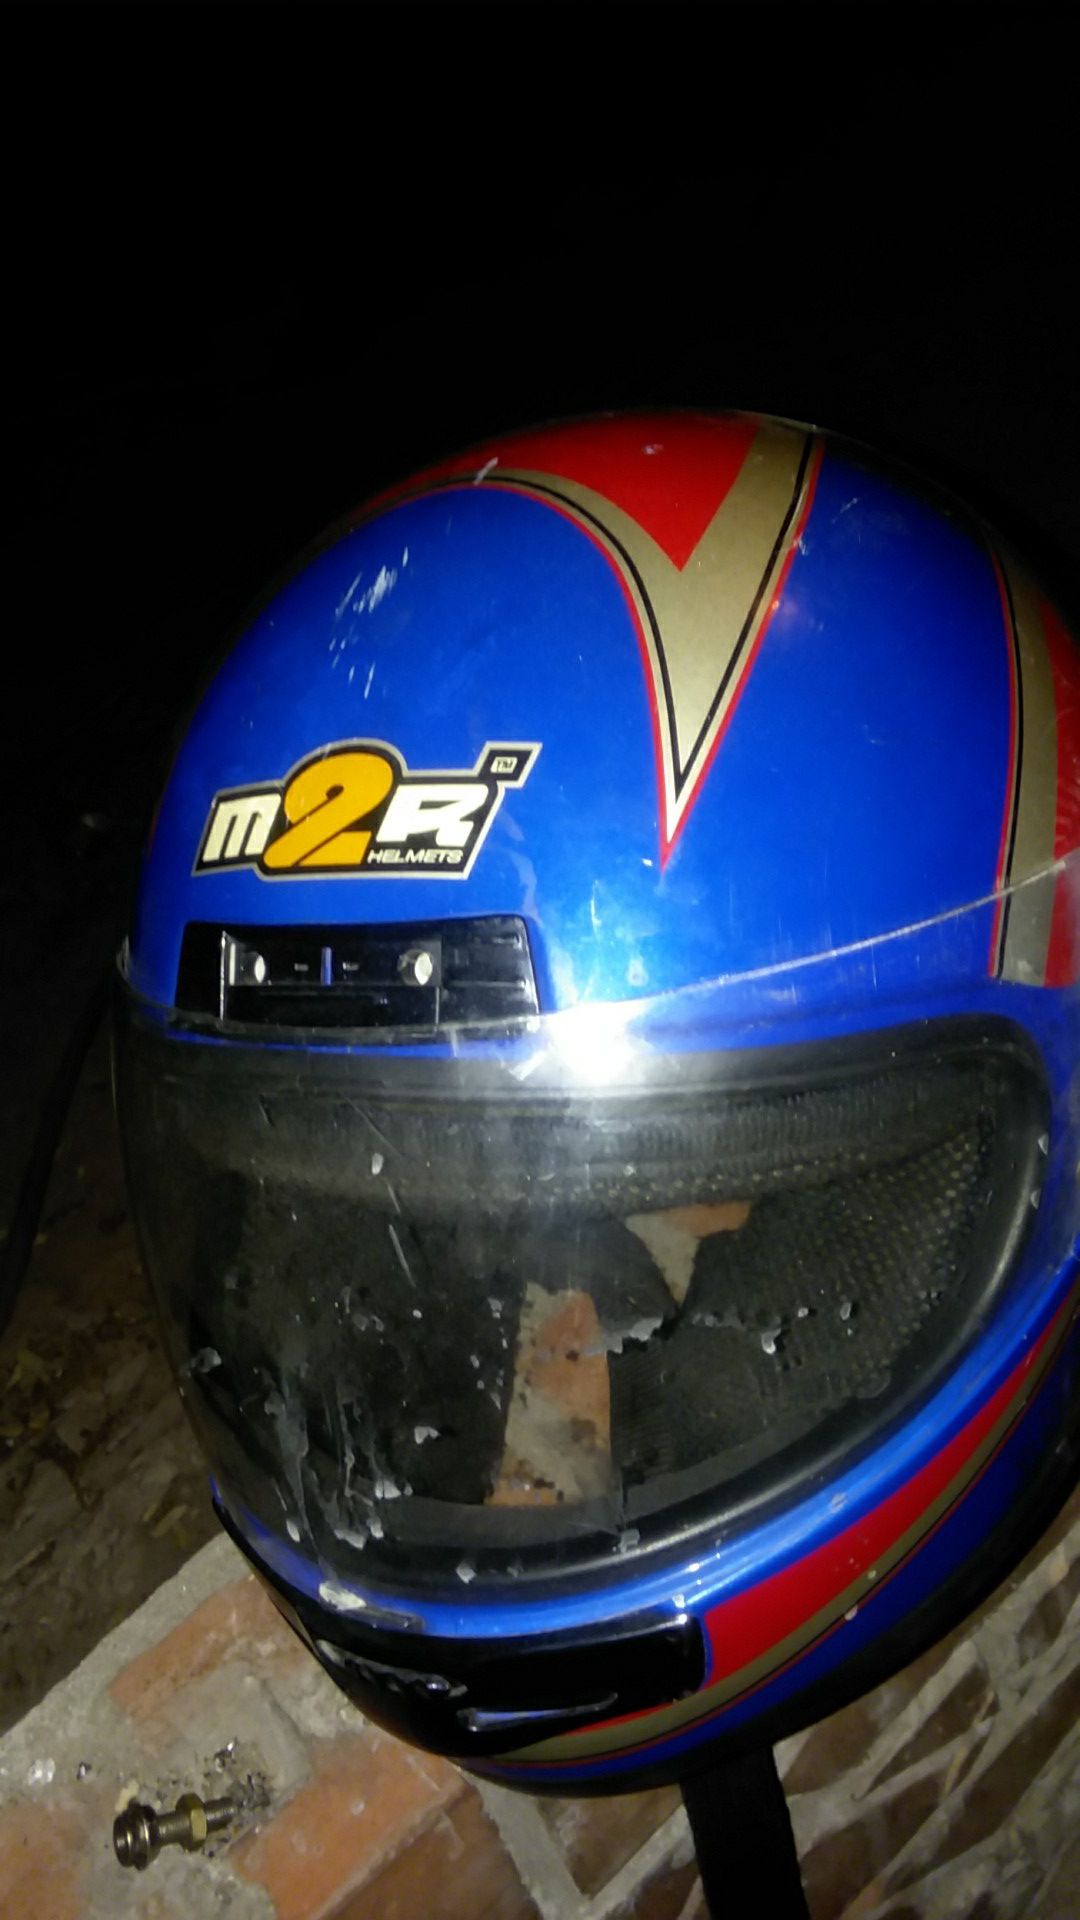 M2R motor cycle helmet